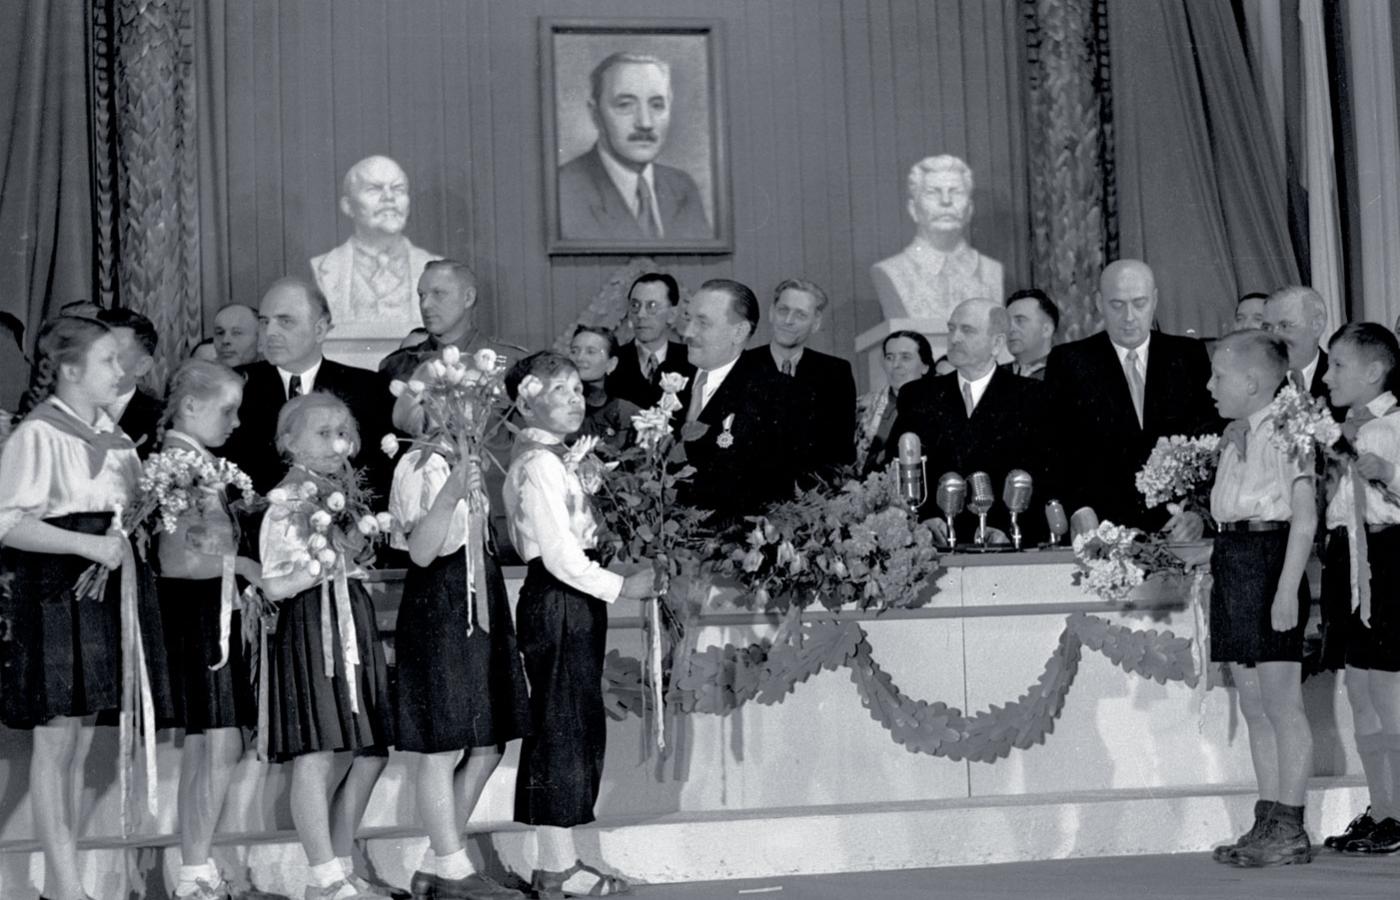 Delegacja dzieci składa życzenia prezydentowi PRL Bolesławowi Bierutowi z okazji 60. rocznicy urodzin, Warszawa, 18 kwietnia 1952 r.